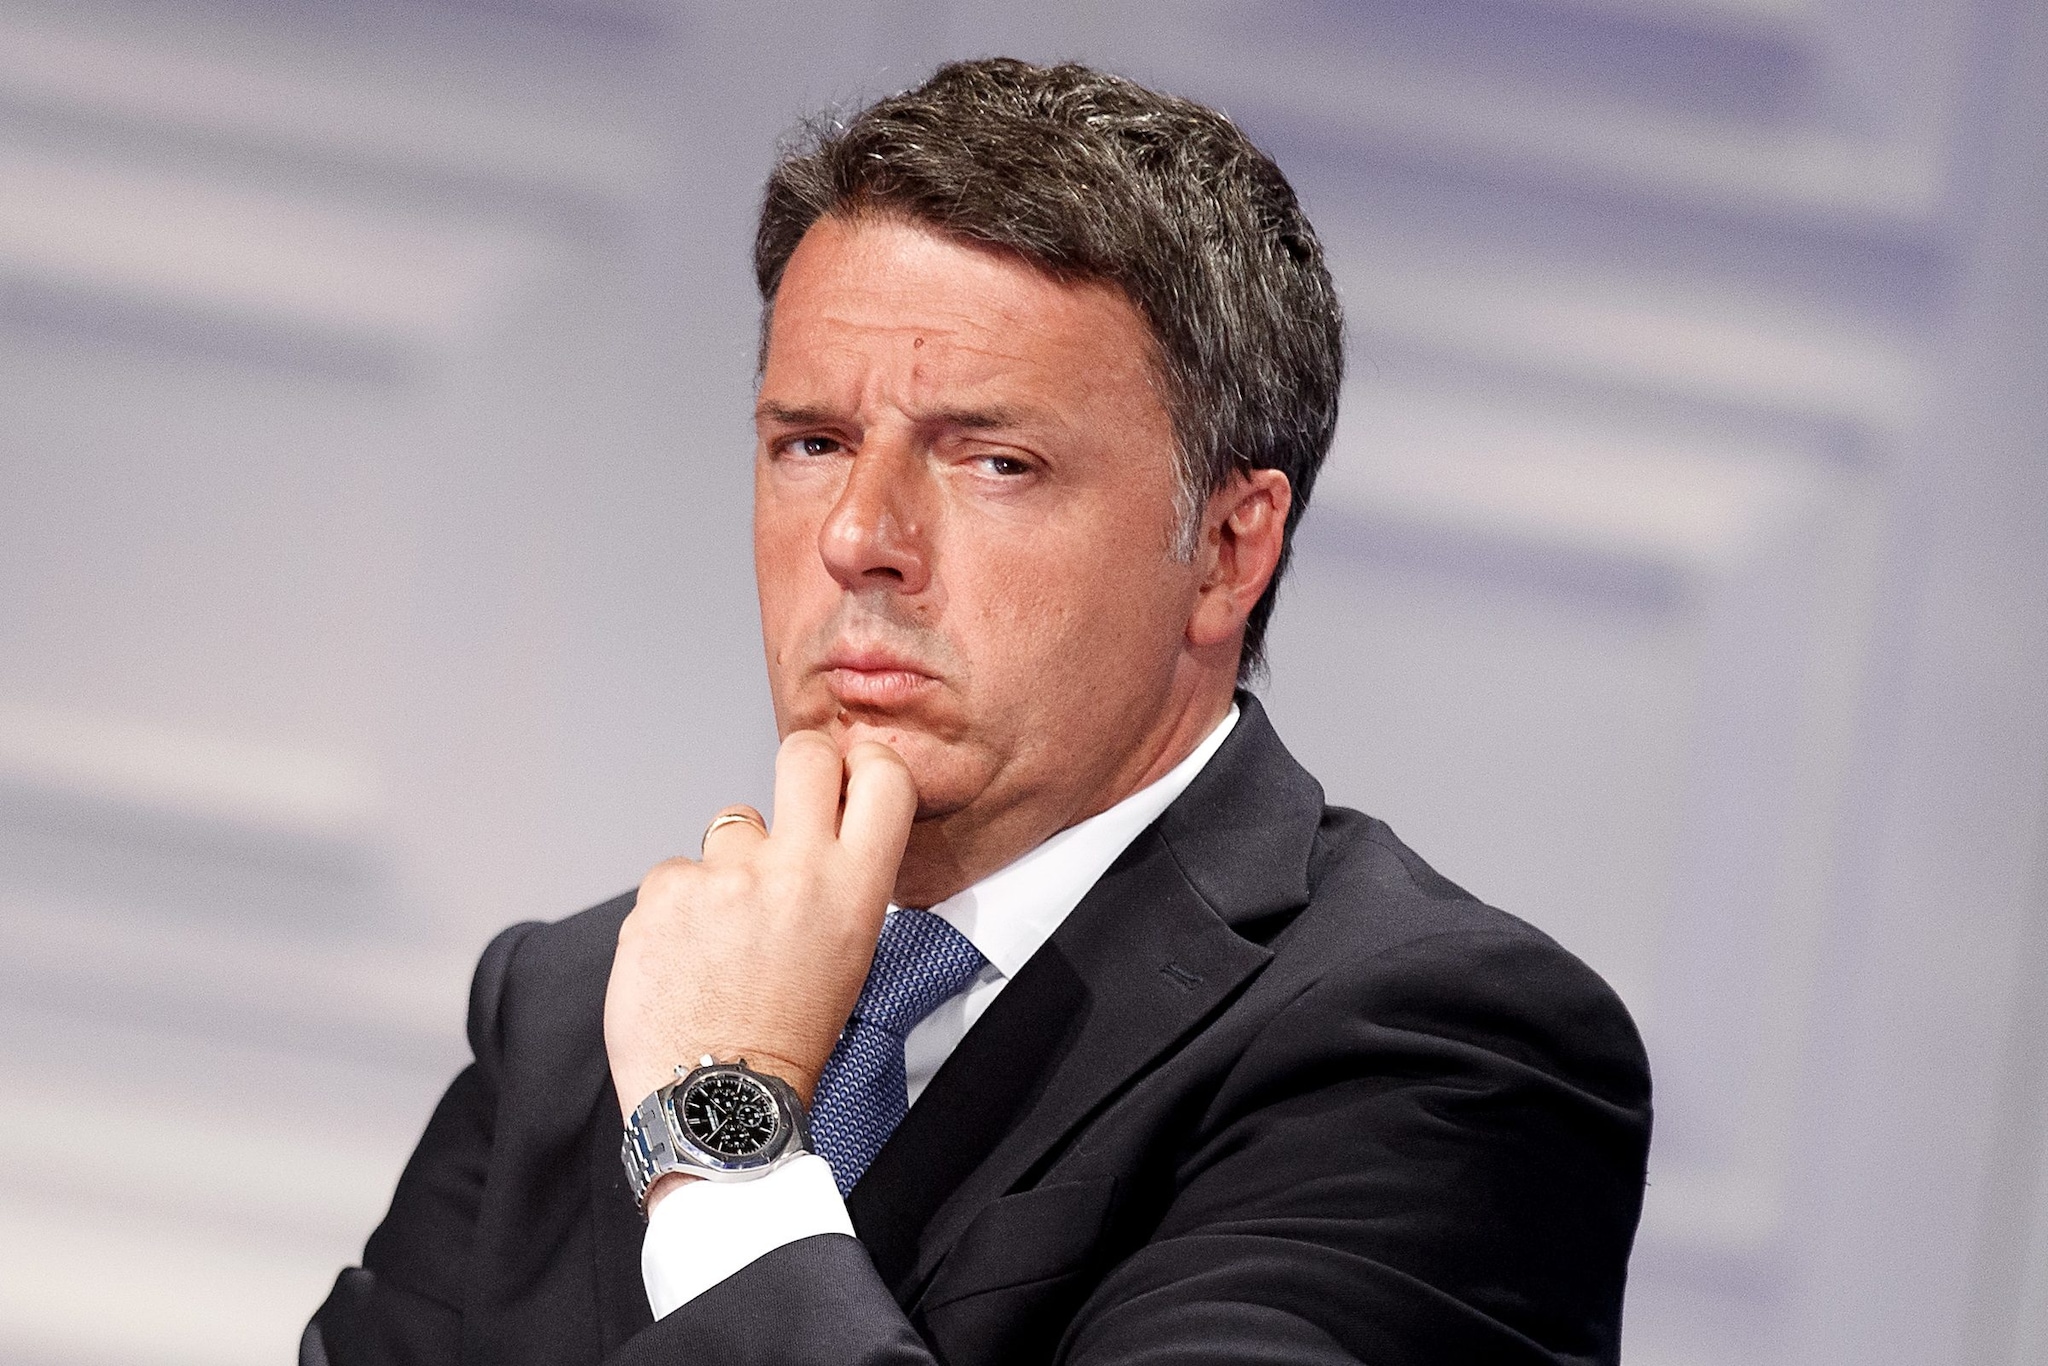 Elezioni, Renzi: "Io con Berlusconi? No grazie. Andiamo da soli, con le nostre idee"